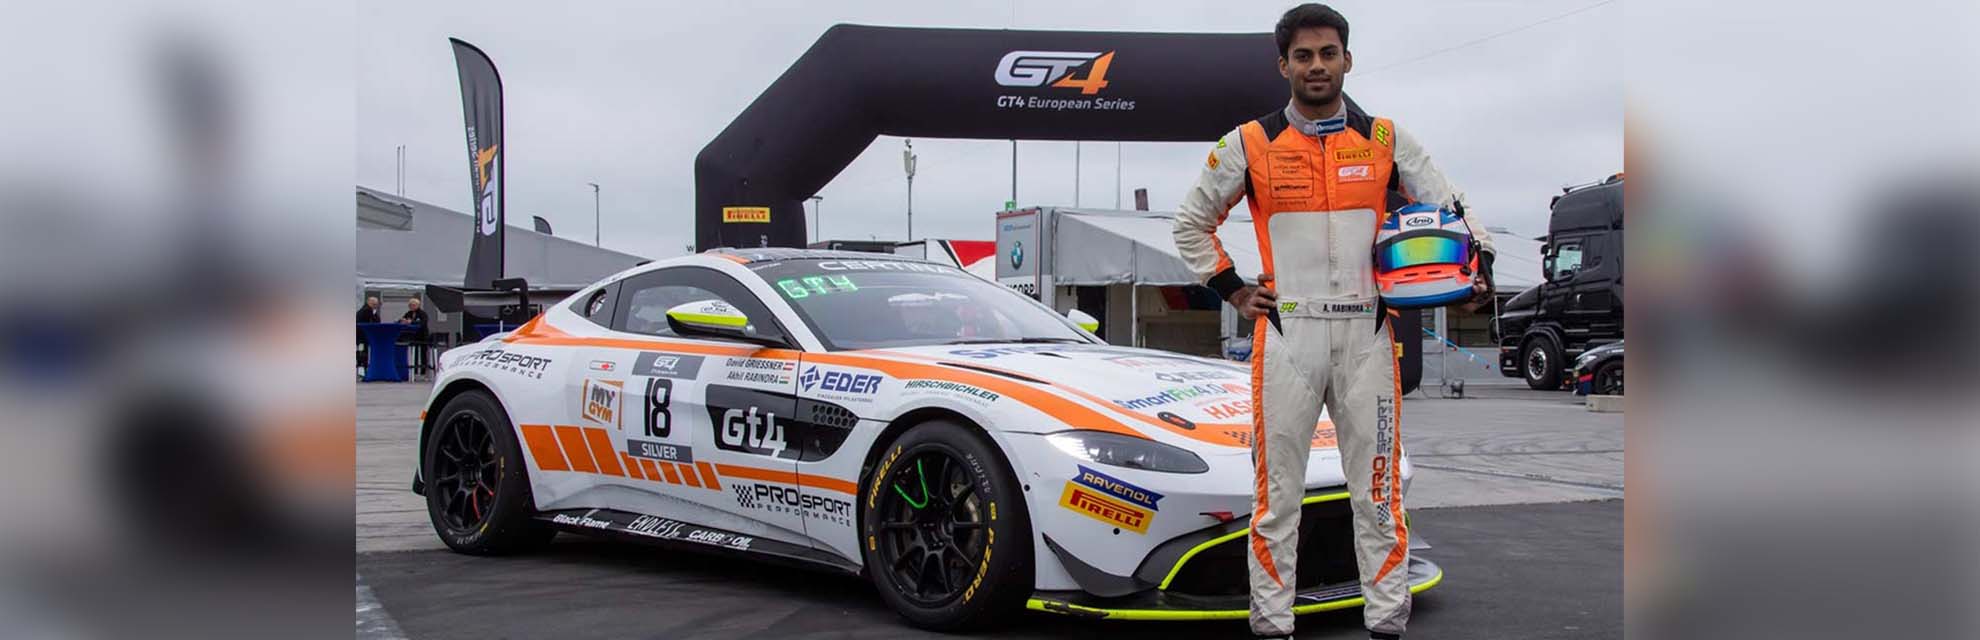 От картинга до европейской серии GT4: индийский гонщик Ахил Рабиндра едет к славе